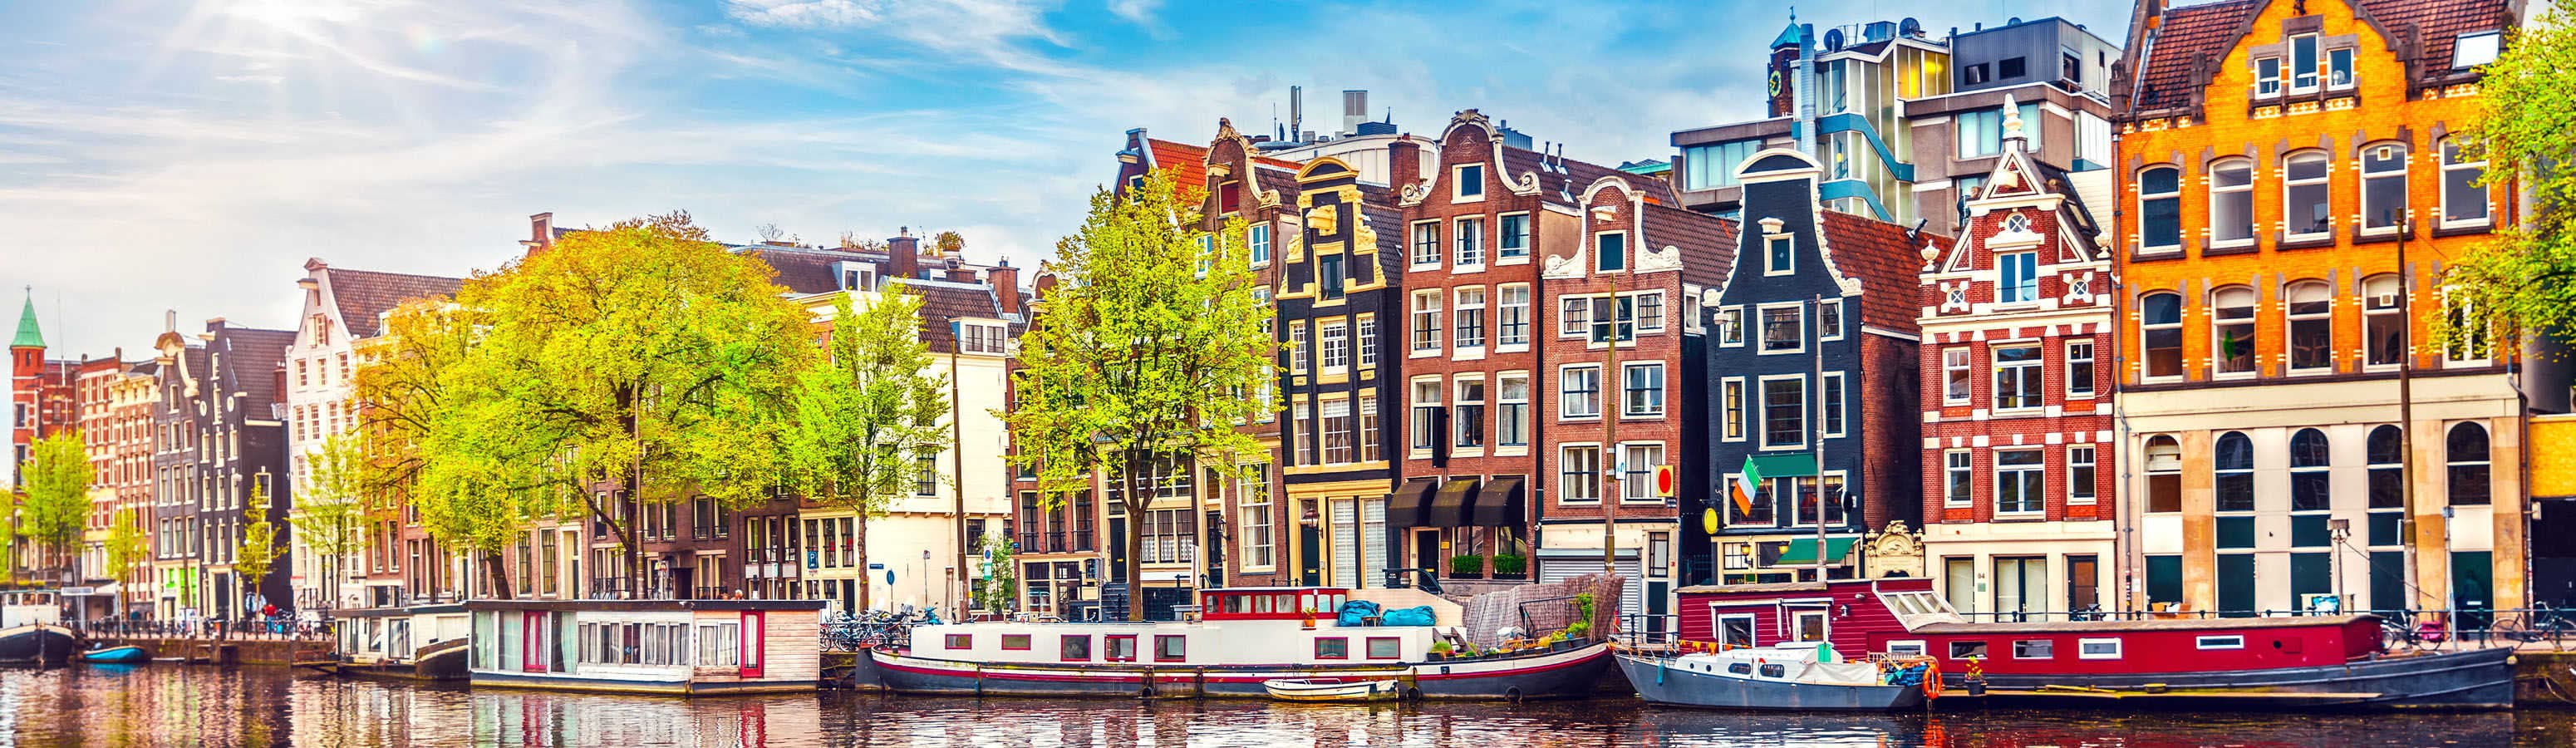 Romantický Amsterdam, mesto cyklistov, cofeeshopov a tulipánov